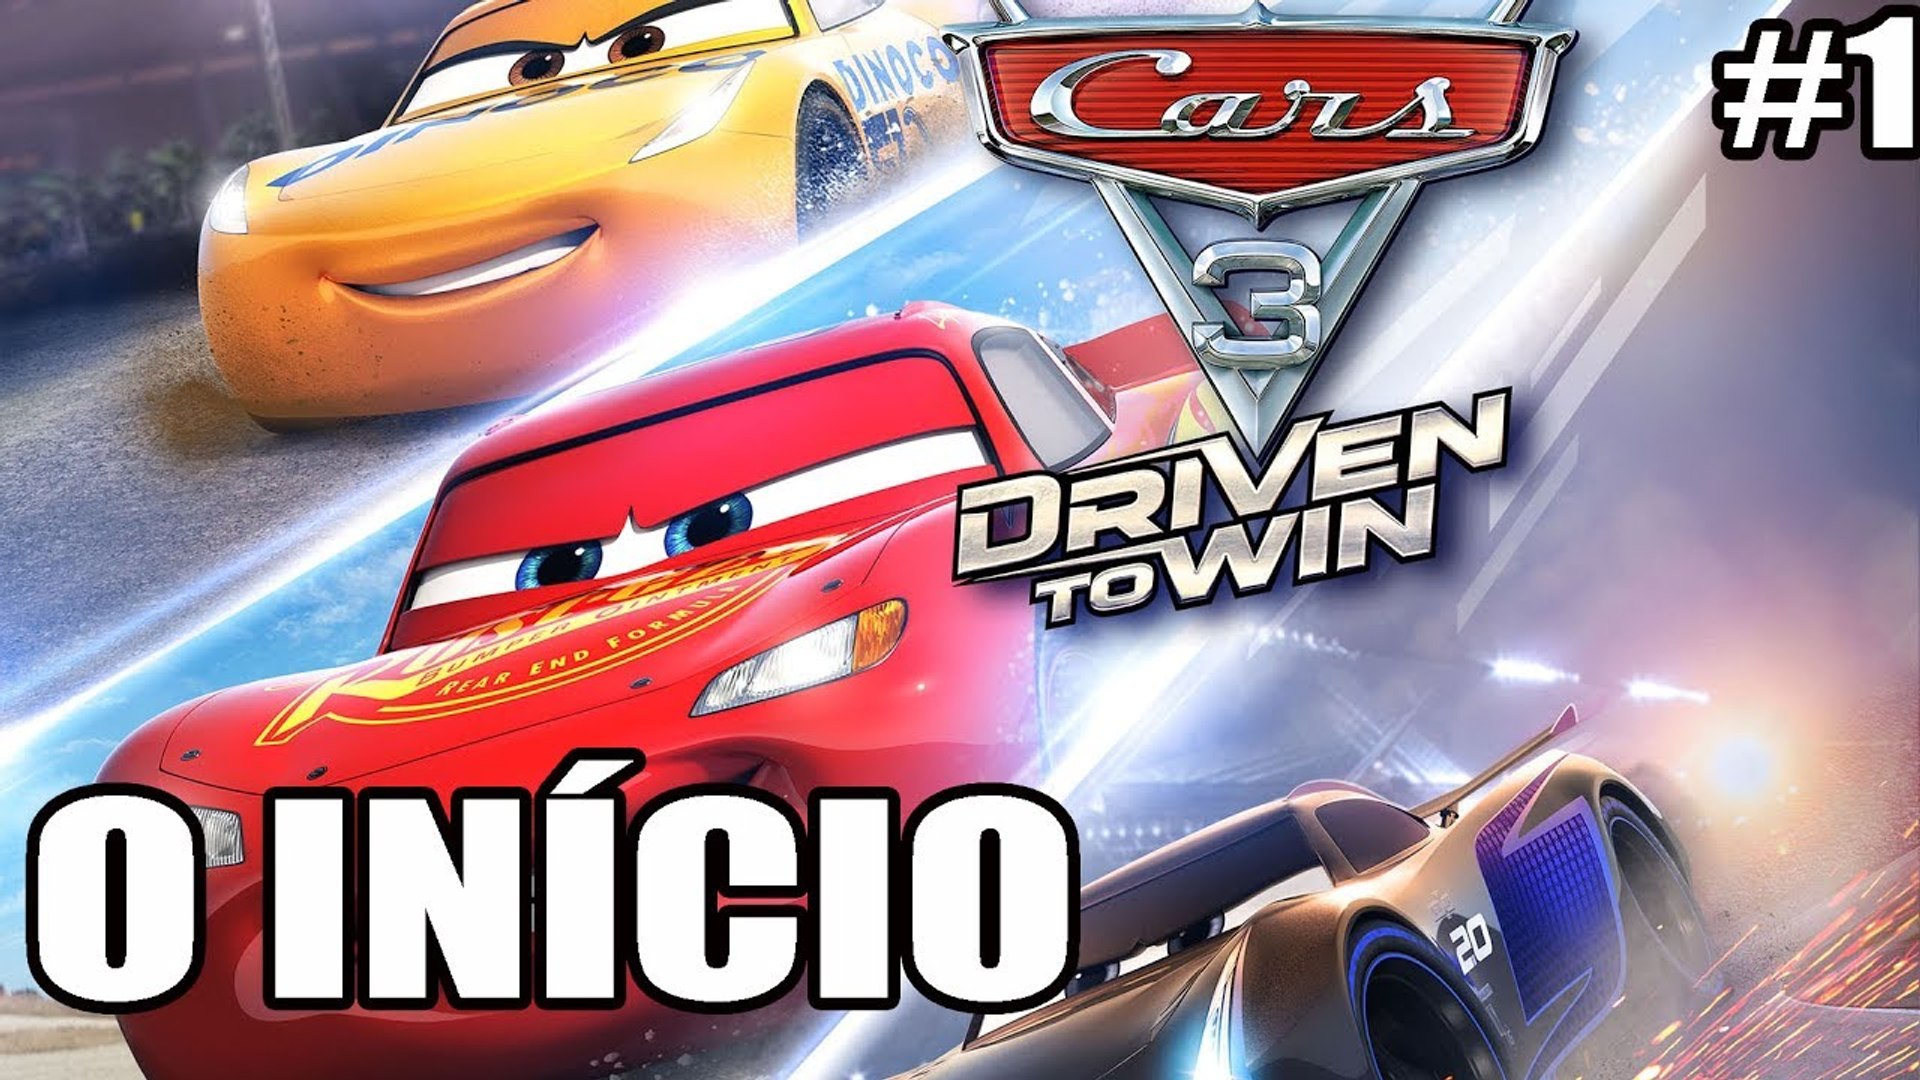 Carros 3 (Cars 3) - Xbox 360, Xbox One, PS3 e PS4 - O INÍCIO - parte 1 